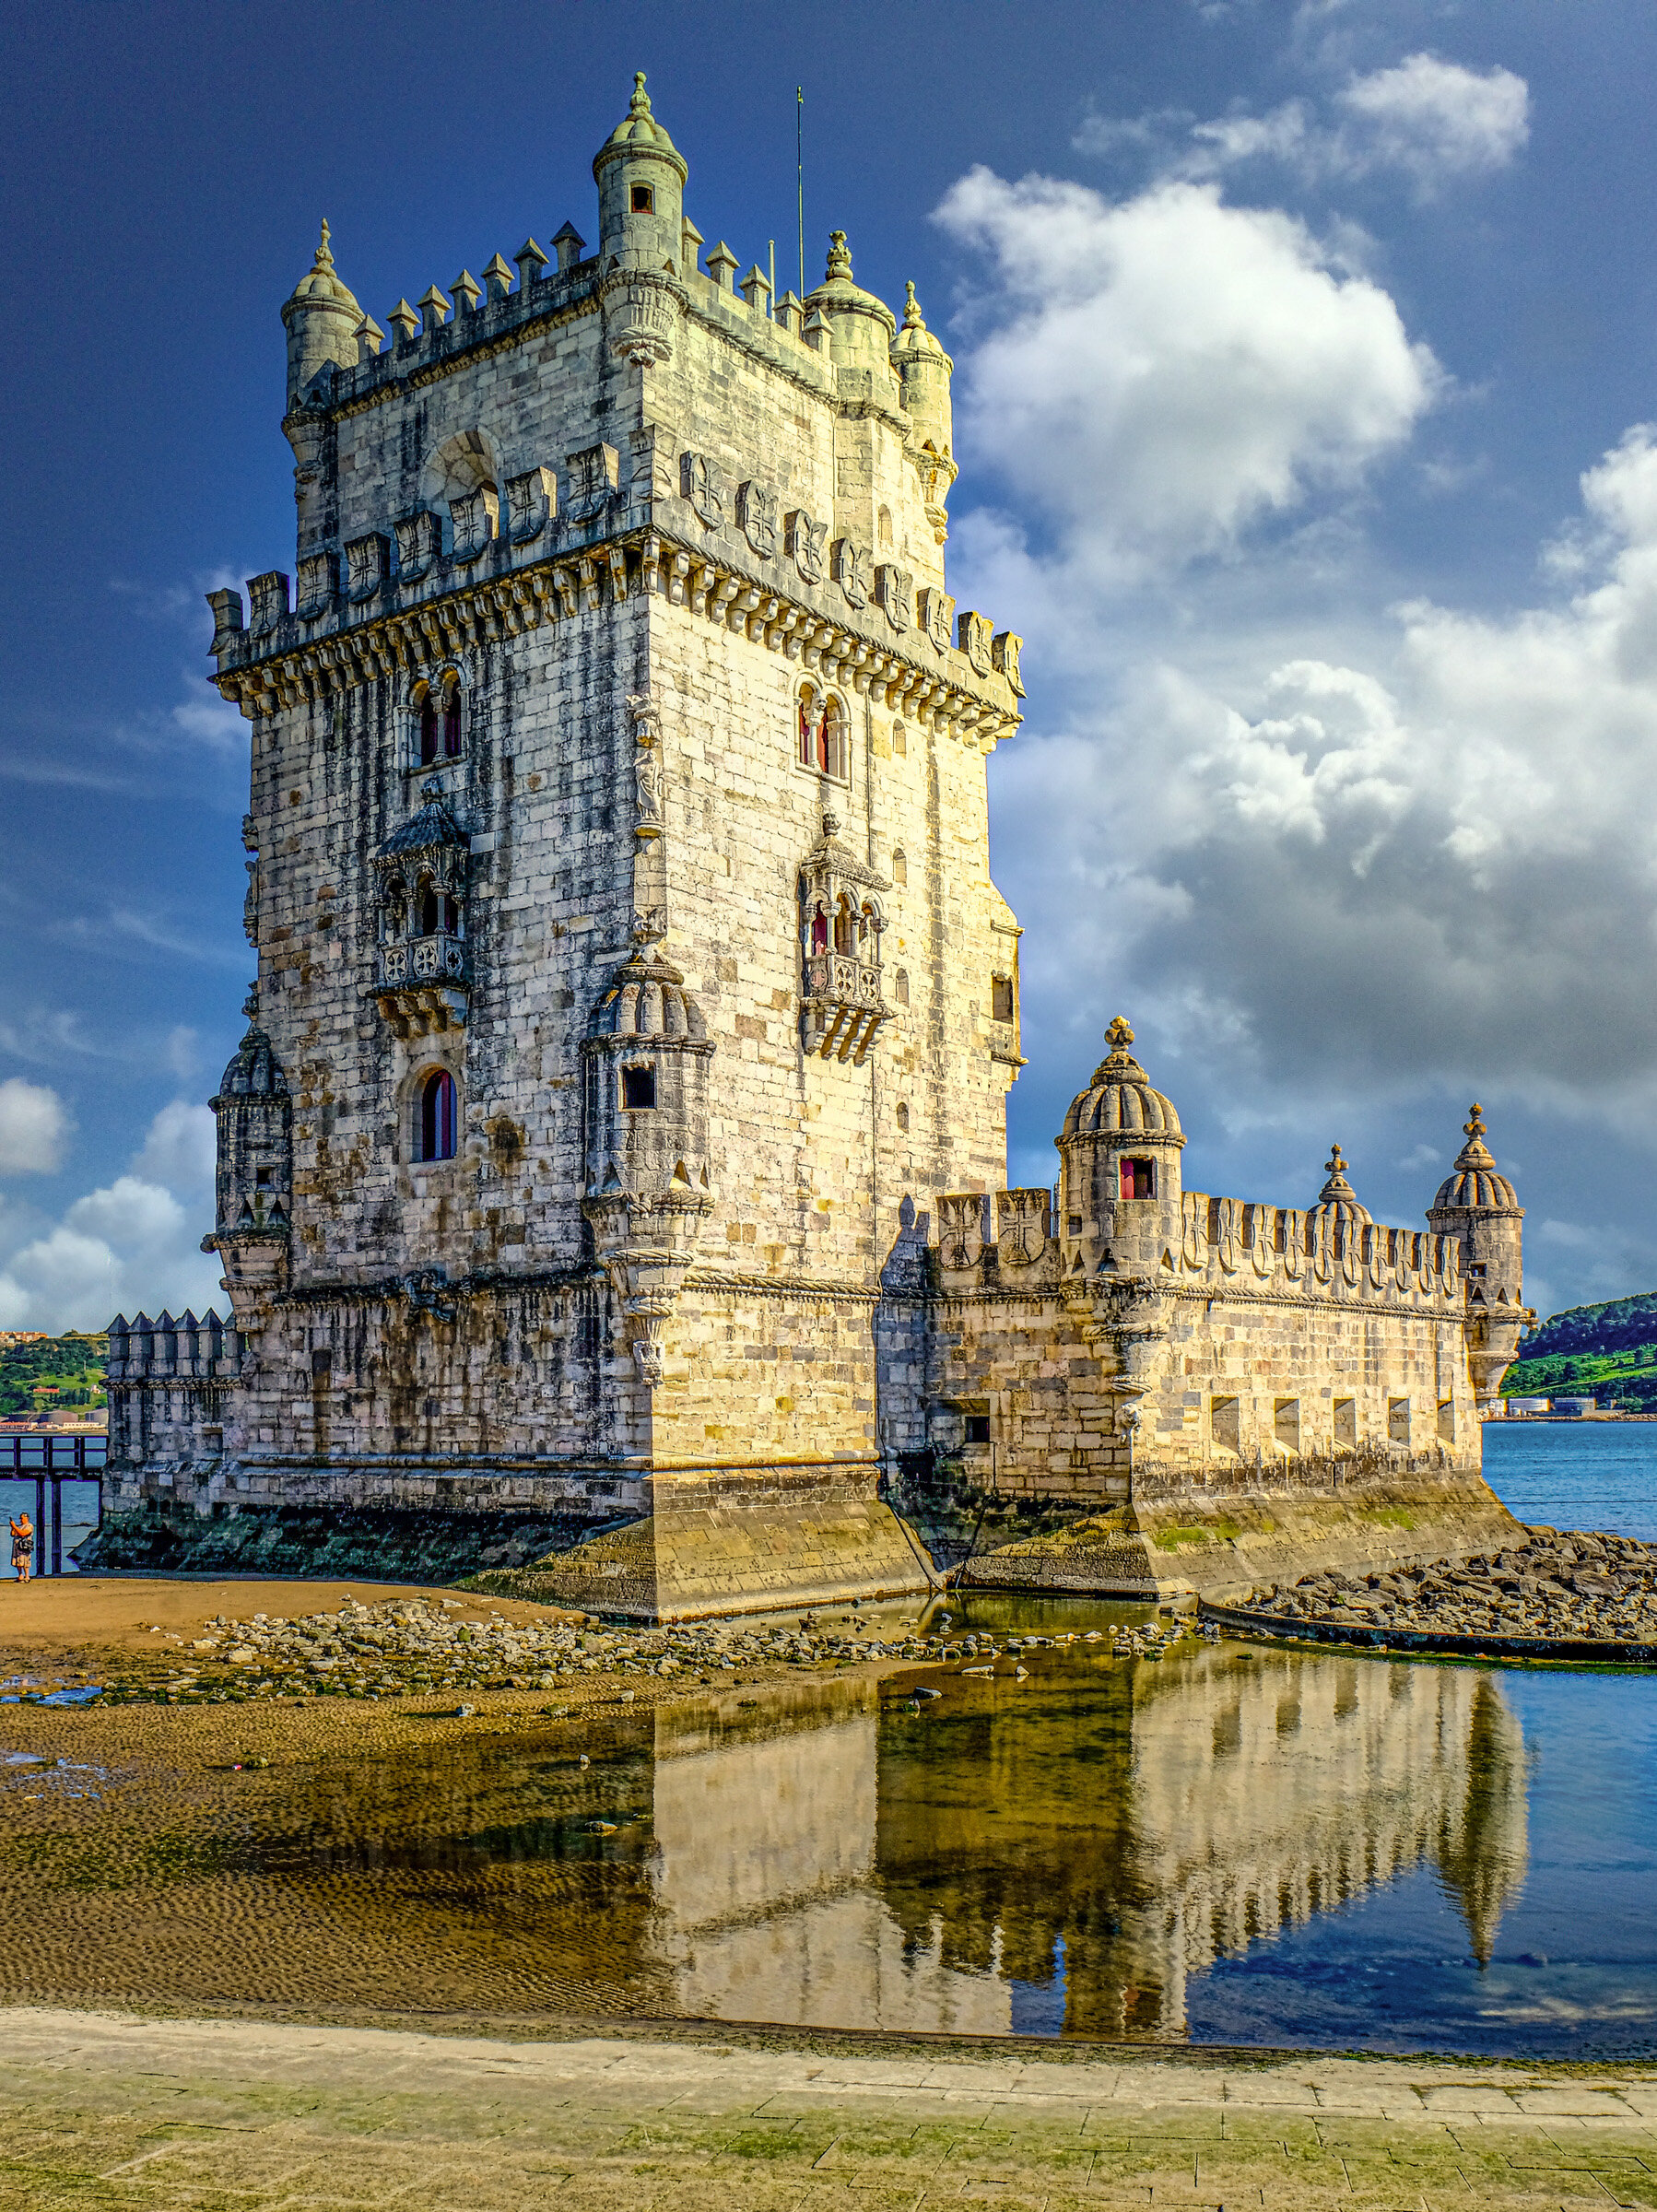  Belem Tower, Lisbon, Portugal 